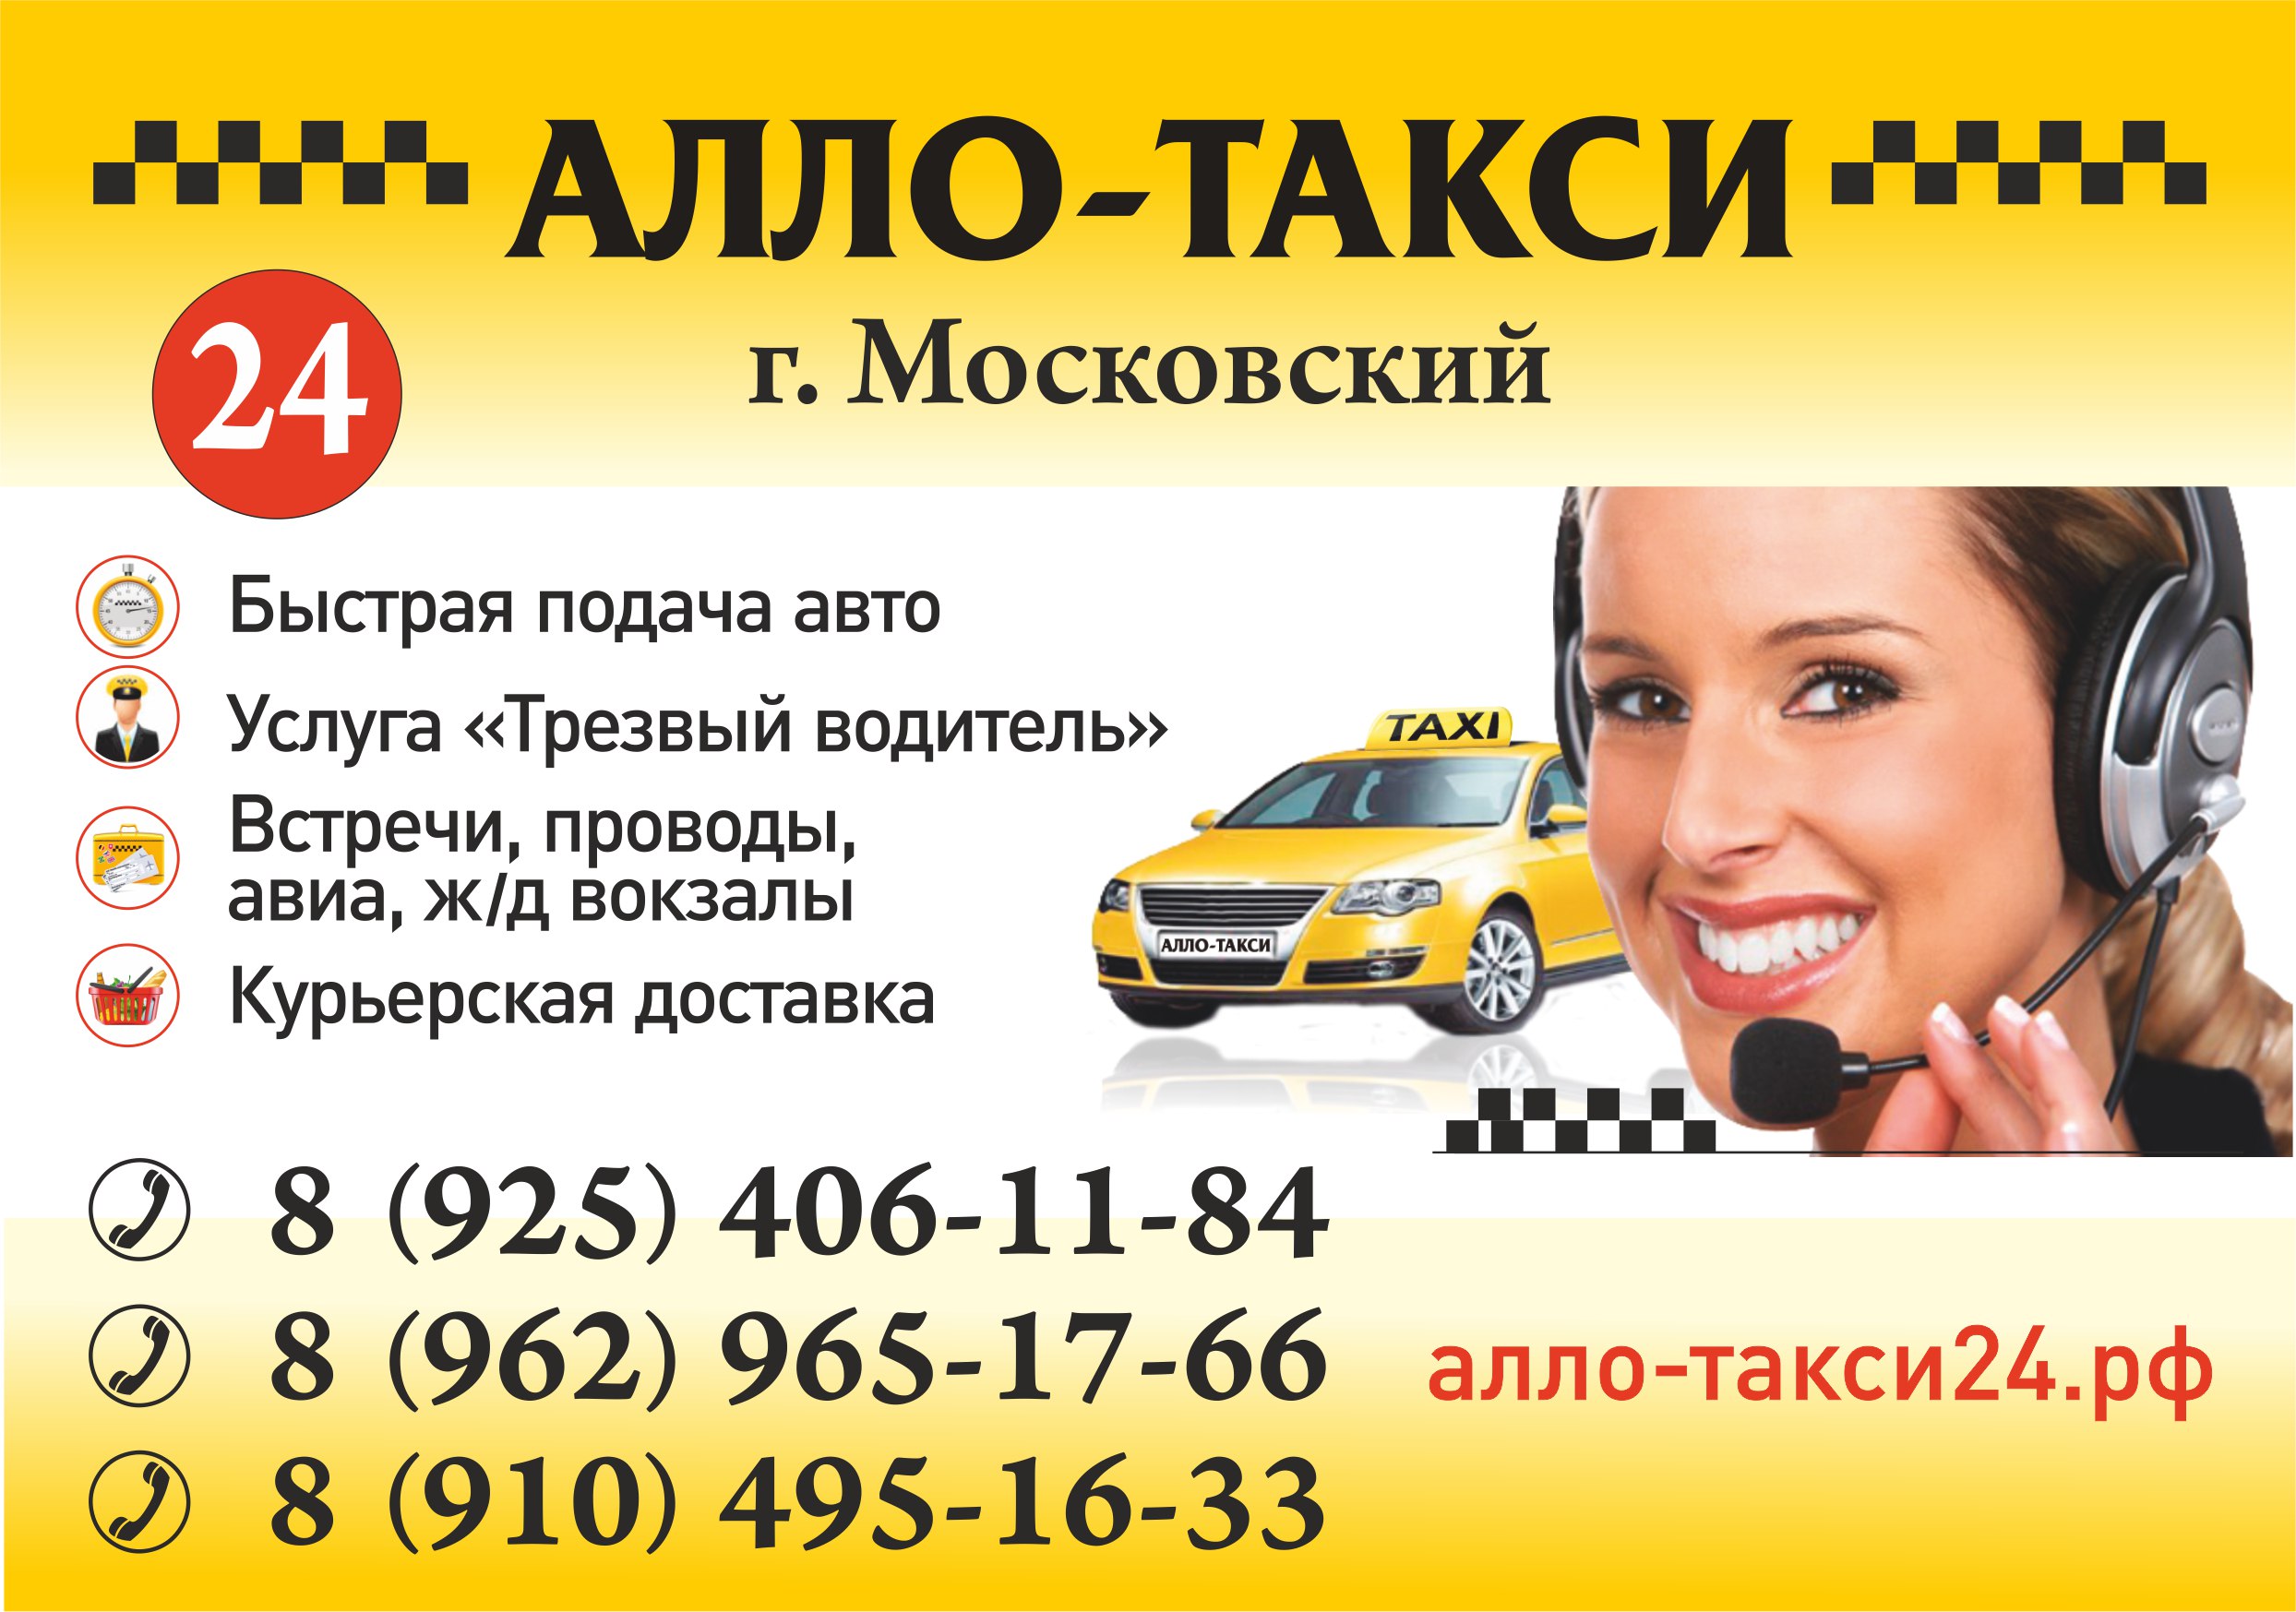 Как вызвать такси в чехии в 2021 году: телефоны, сайты, стоимость